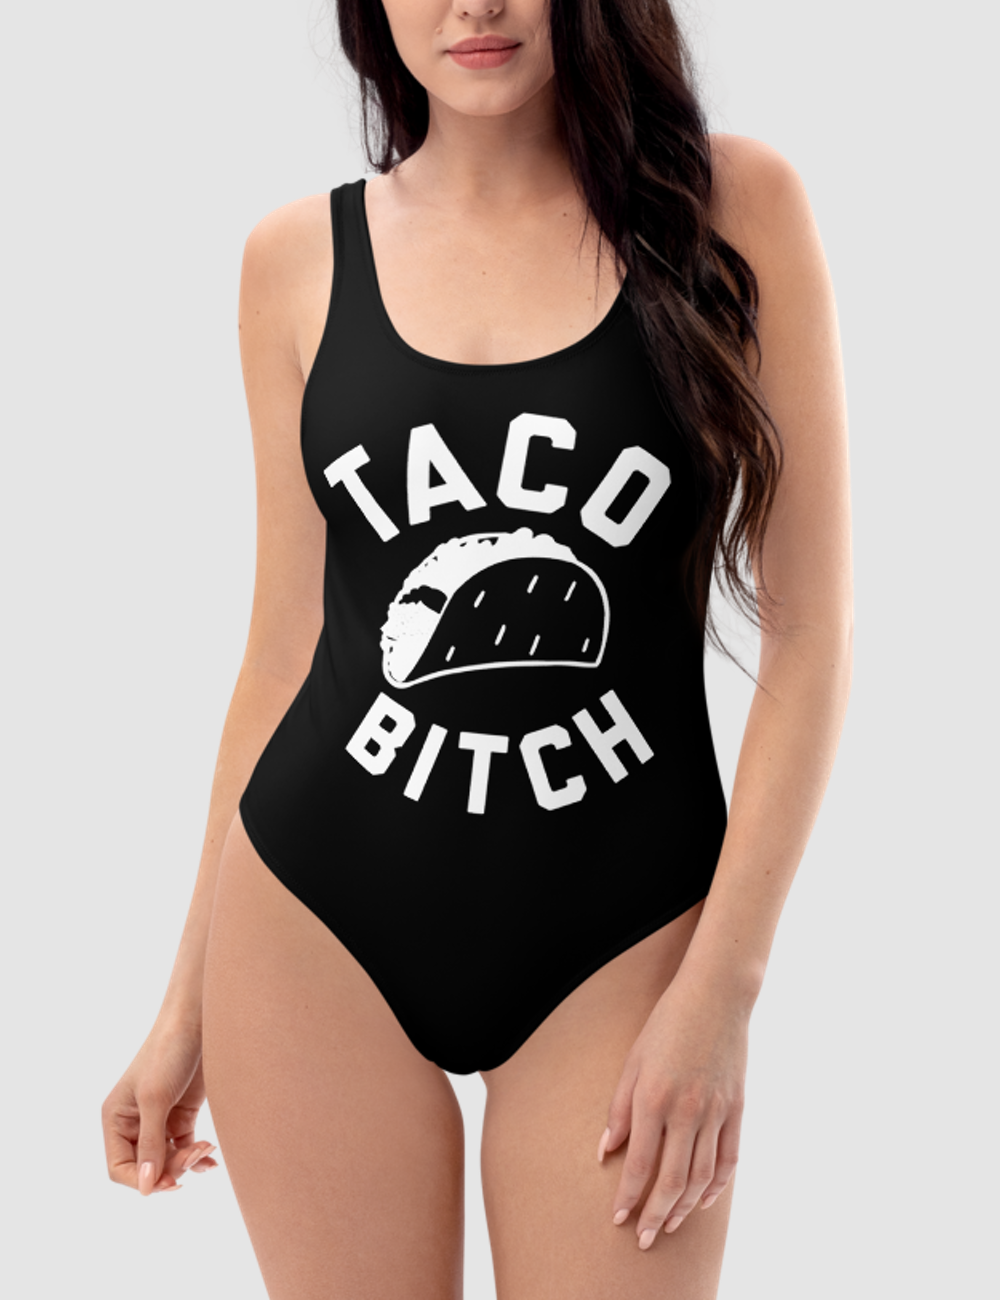 Taco Bitch | Women's One-Piece Swimsuit OniTakai